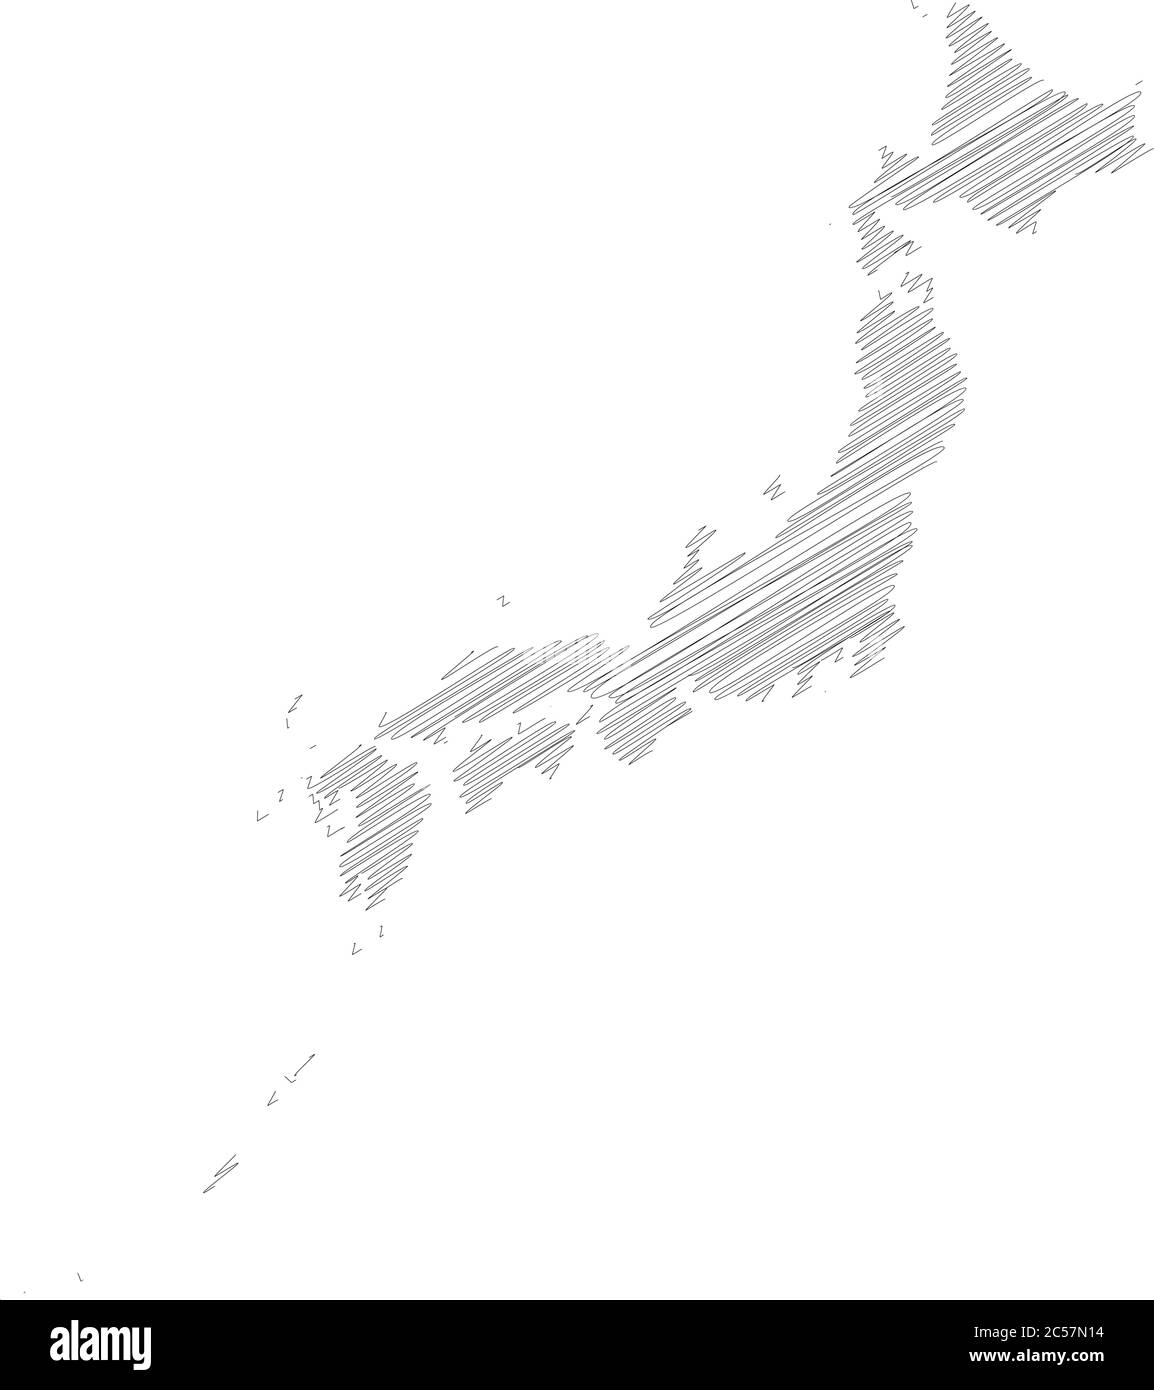 Japon - croquis de scribble crayon plan de silhouette de la région avec ombre portée. Illustration simple à vecteur plat. Illustration de Vecteur